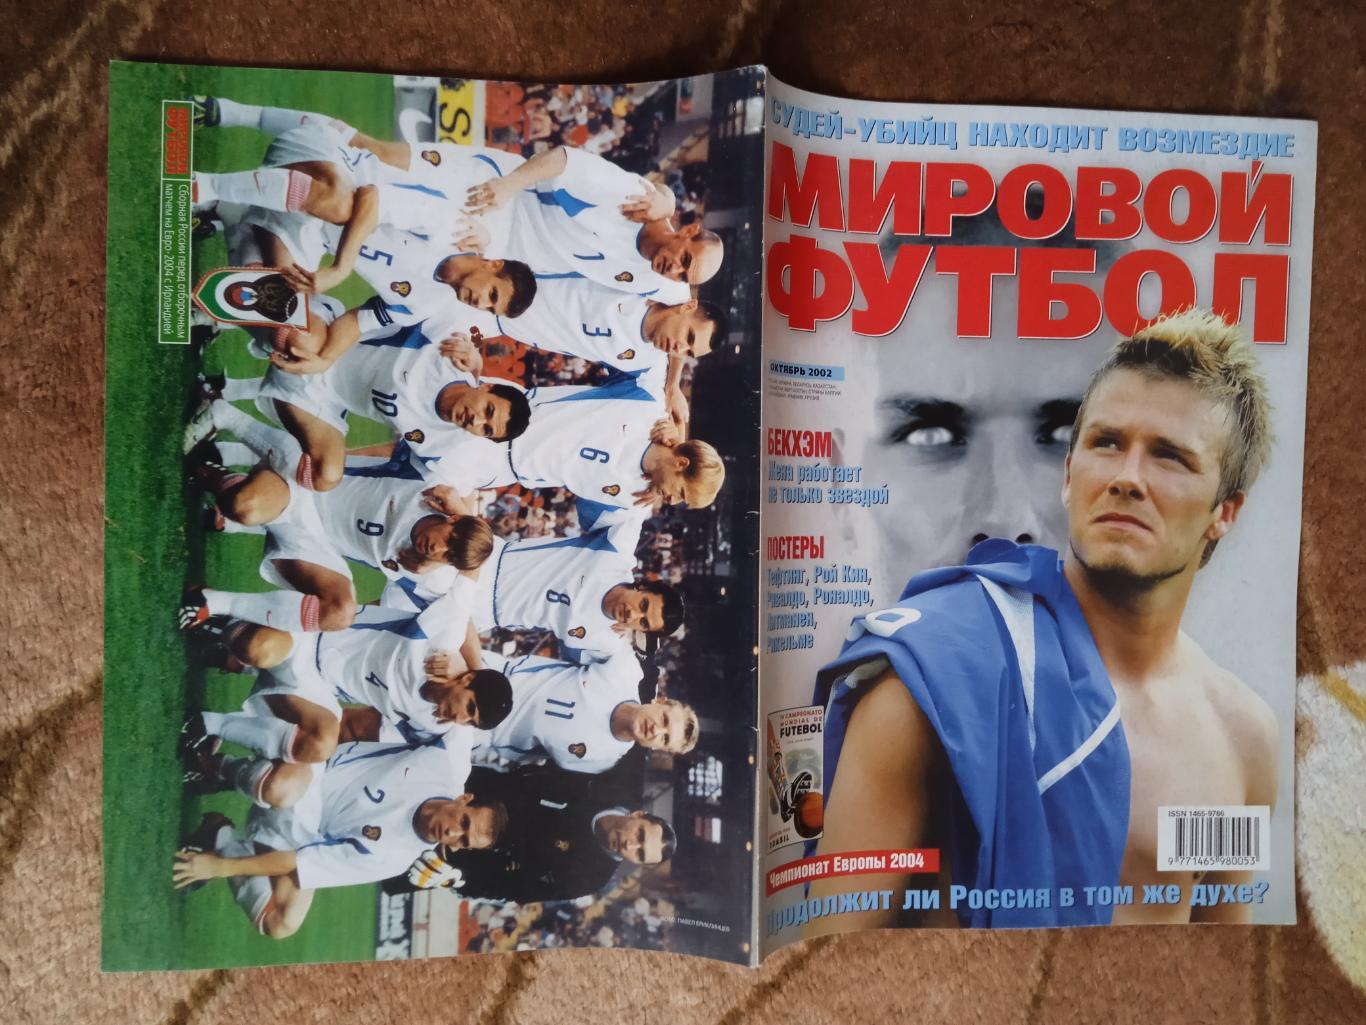 Журнал.Мировой футбол.Октябрь 2002 г. (Постеры).